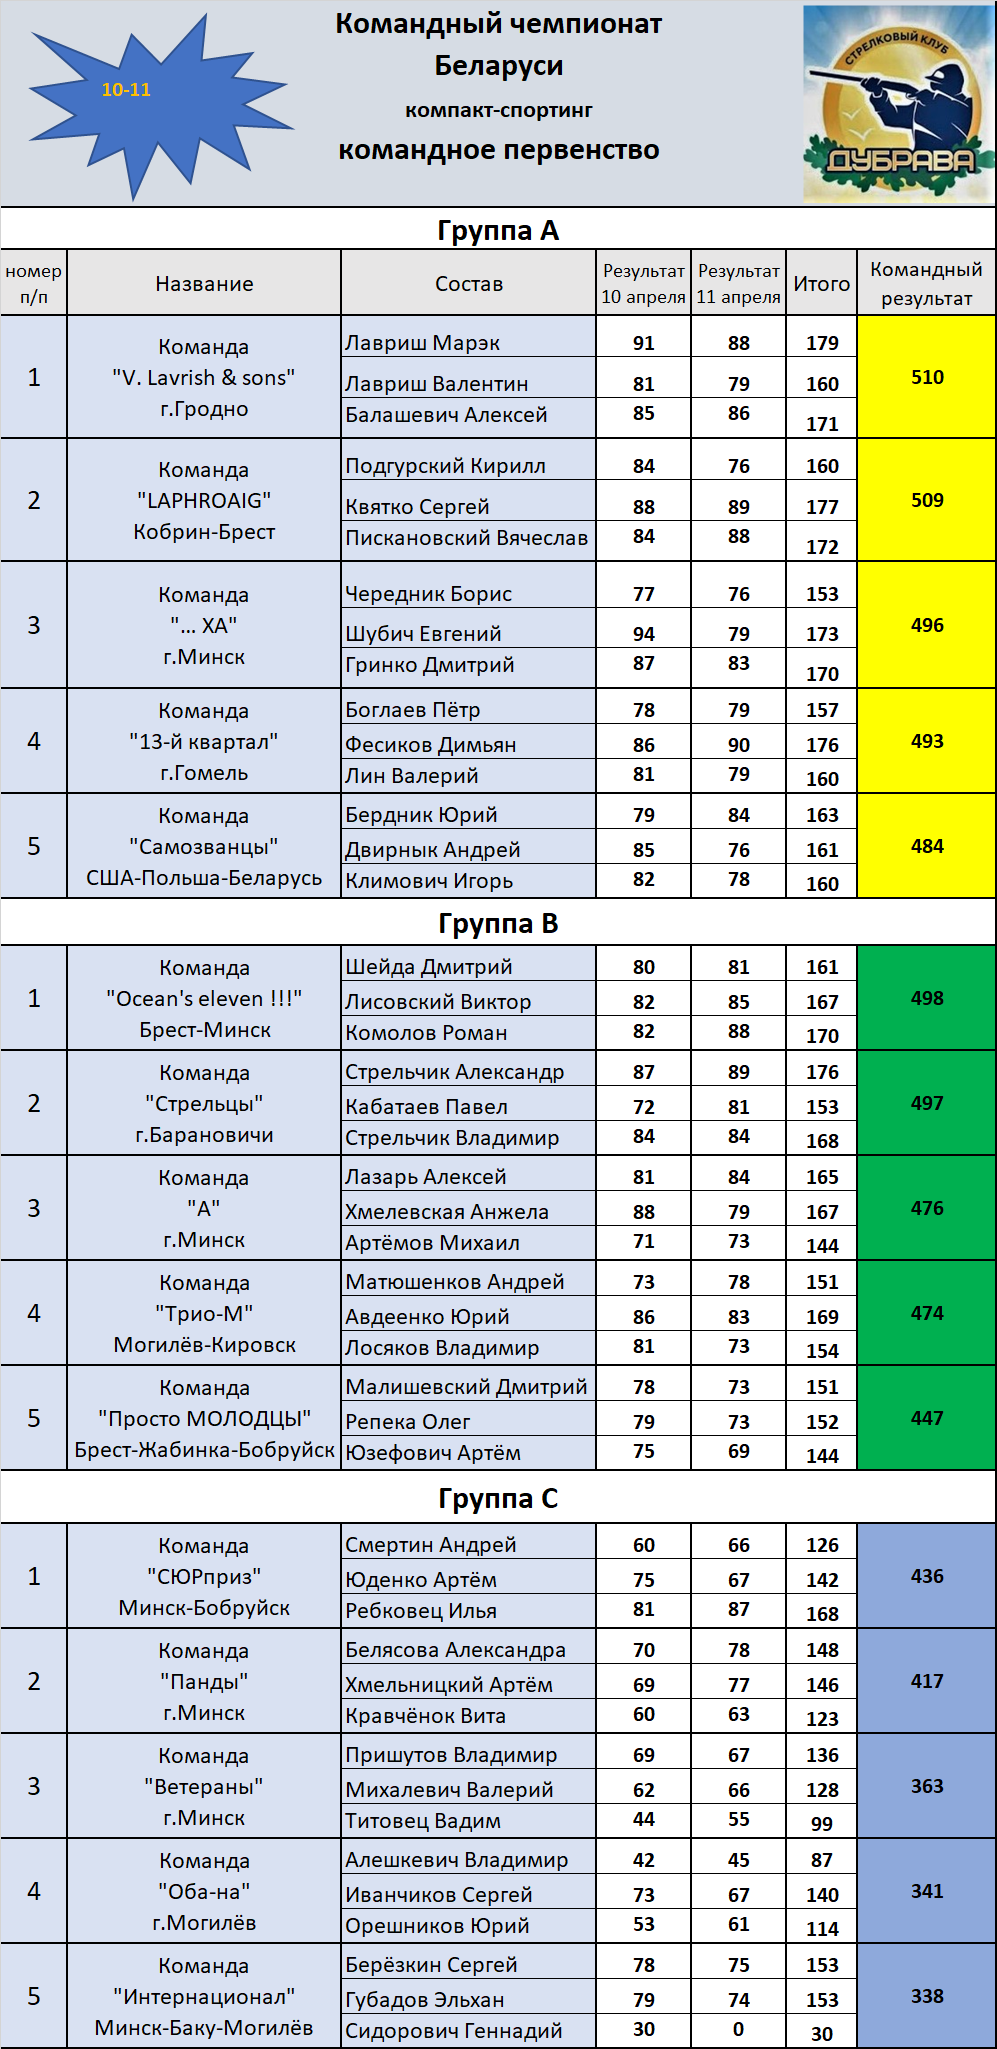 4 1 й командный чемпионат Беларуси